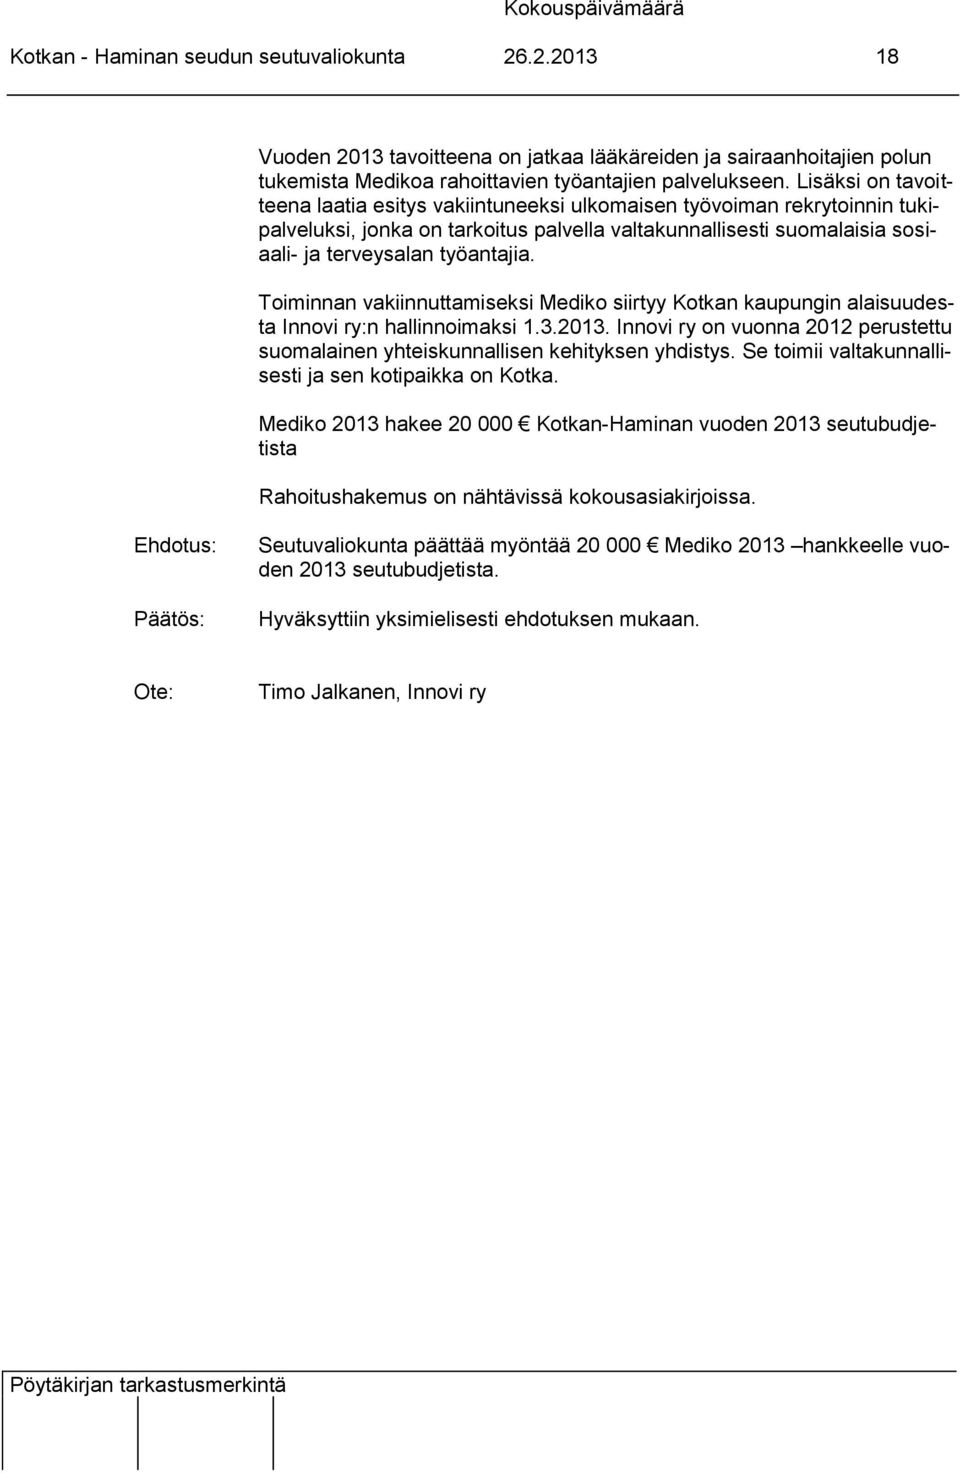 Toiminnan vakiinnuttamiseksi Mediko siirtyy Kotkan kaupungin alaisuudesta Innovi ry:n hallinnoimaksi 1.3.2013. Innovi ry on vuonna 2012 perustettu suomalainen yhteiskunnallisen kehityksen yhdistys.